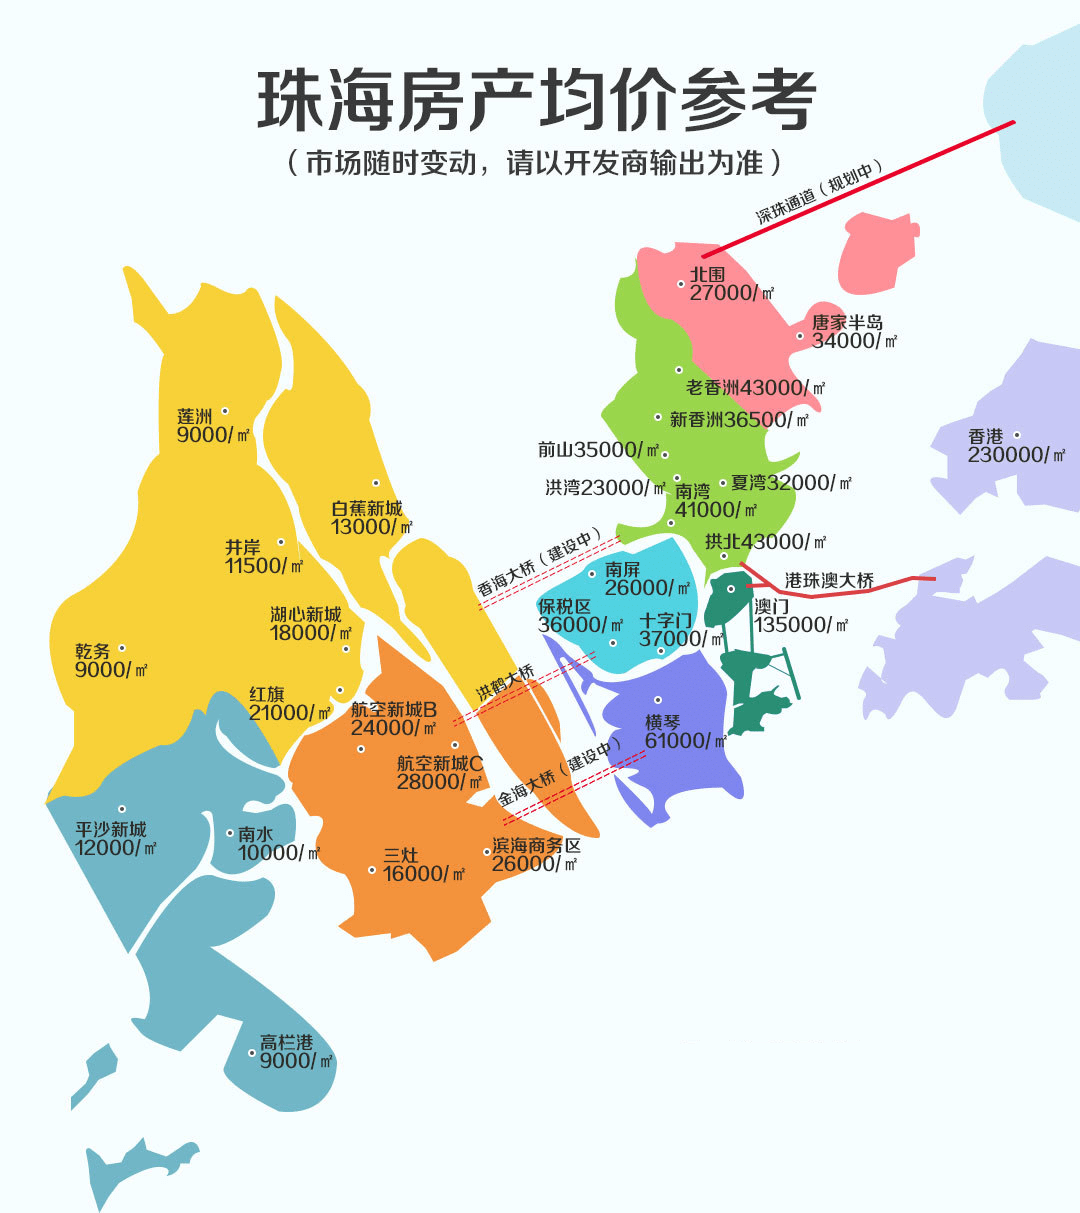 珠海镇区行政图图片